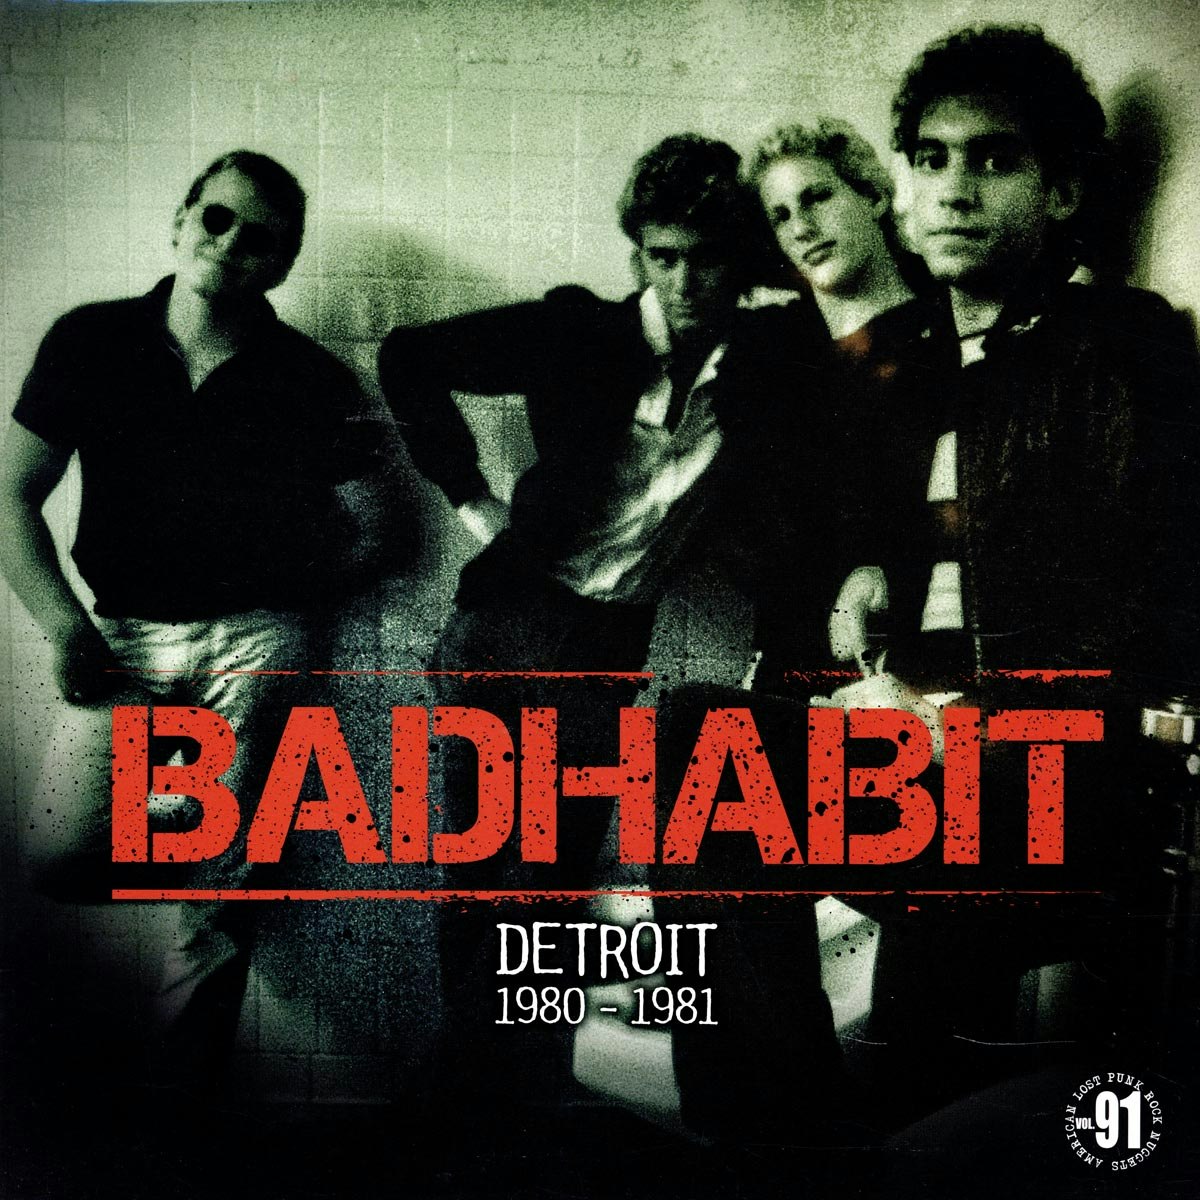 Bad habit - Detroit 1980-1981 (Vinyl LP)